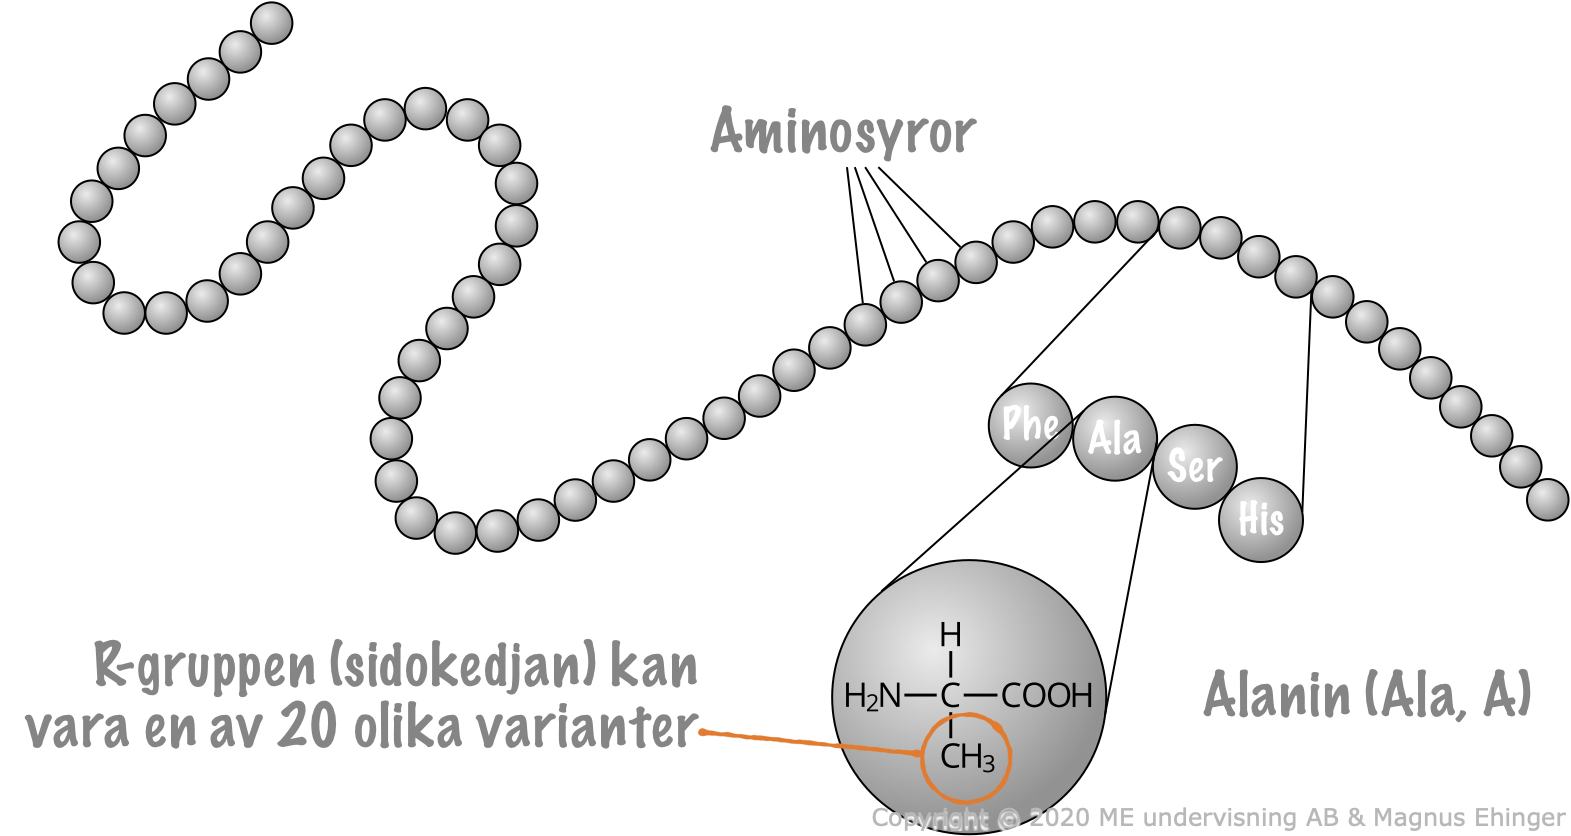 Proteiner består av långa kedjor av aminosyror.